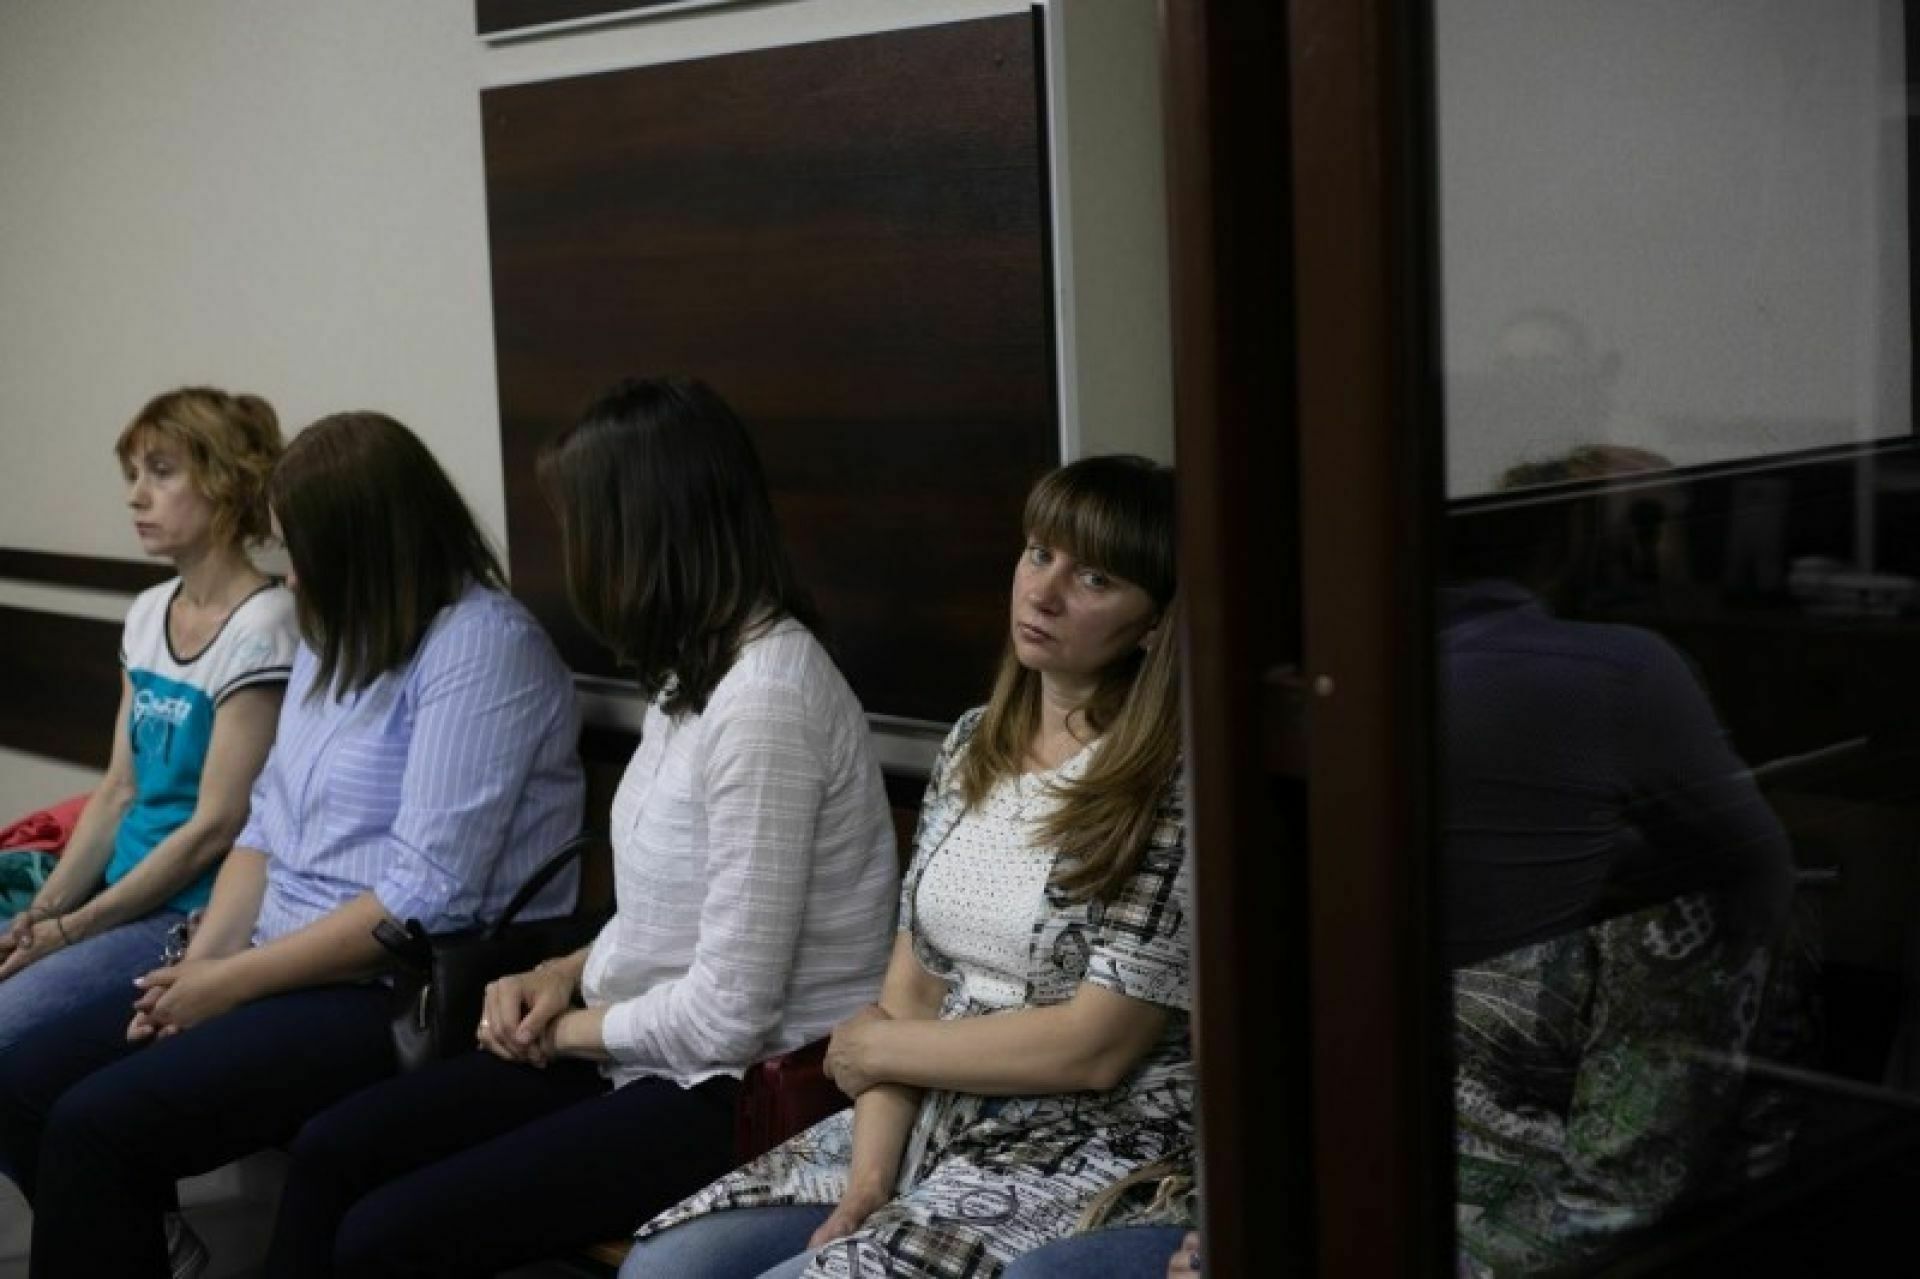 Работниц частного детсада в Барнауле осудили условно за жестокое обращение с детьми